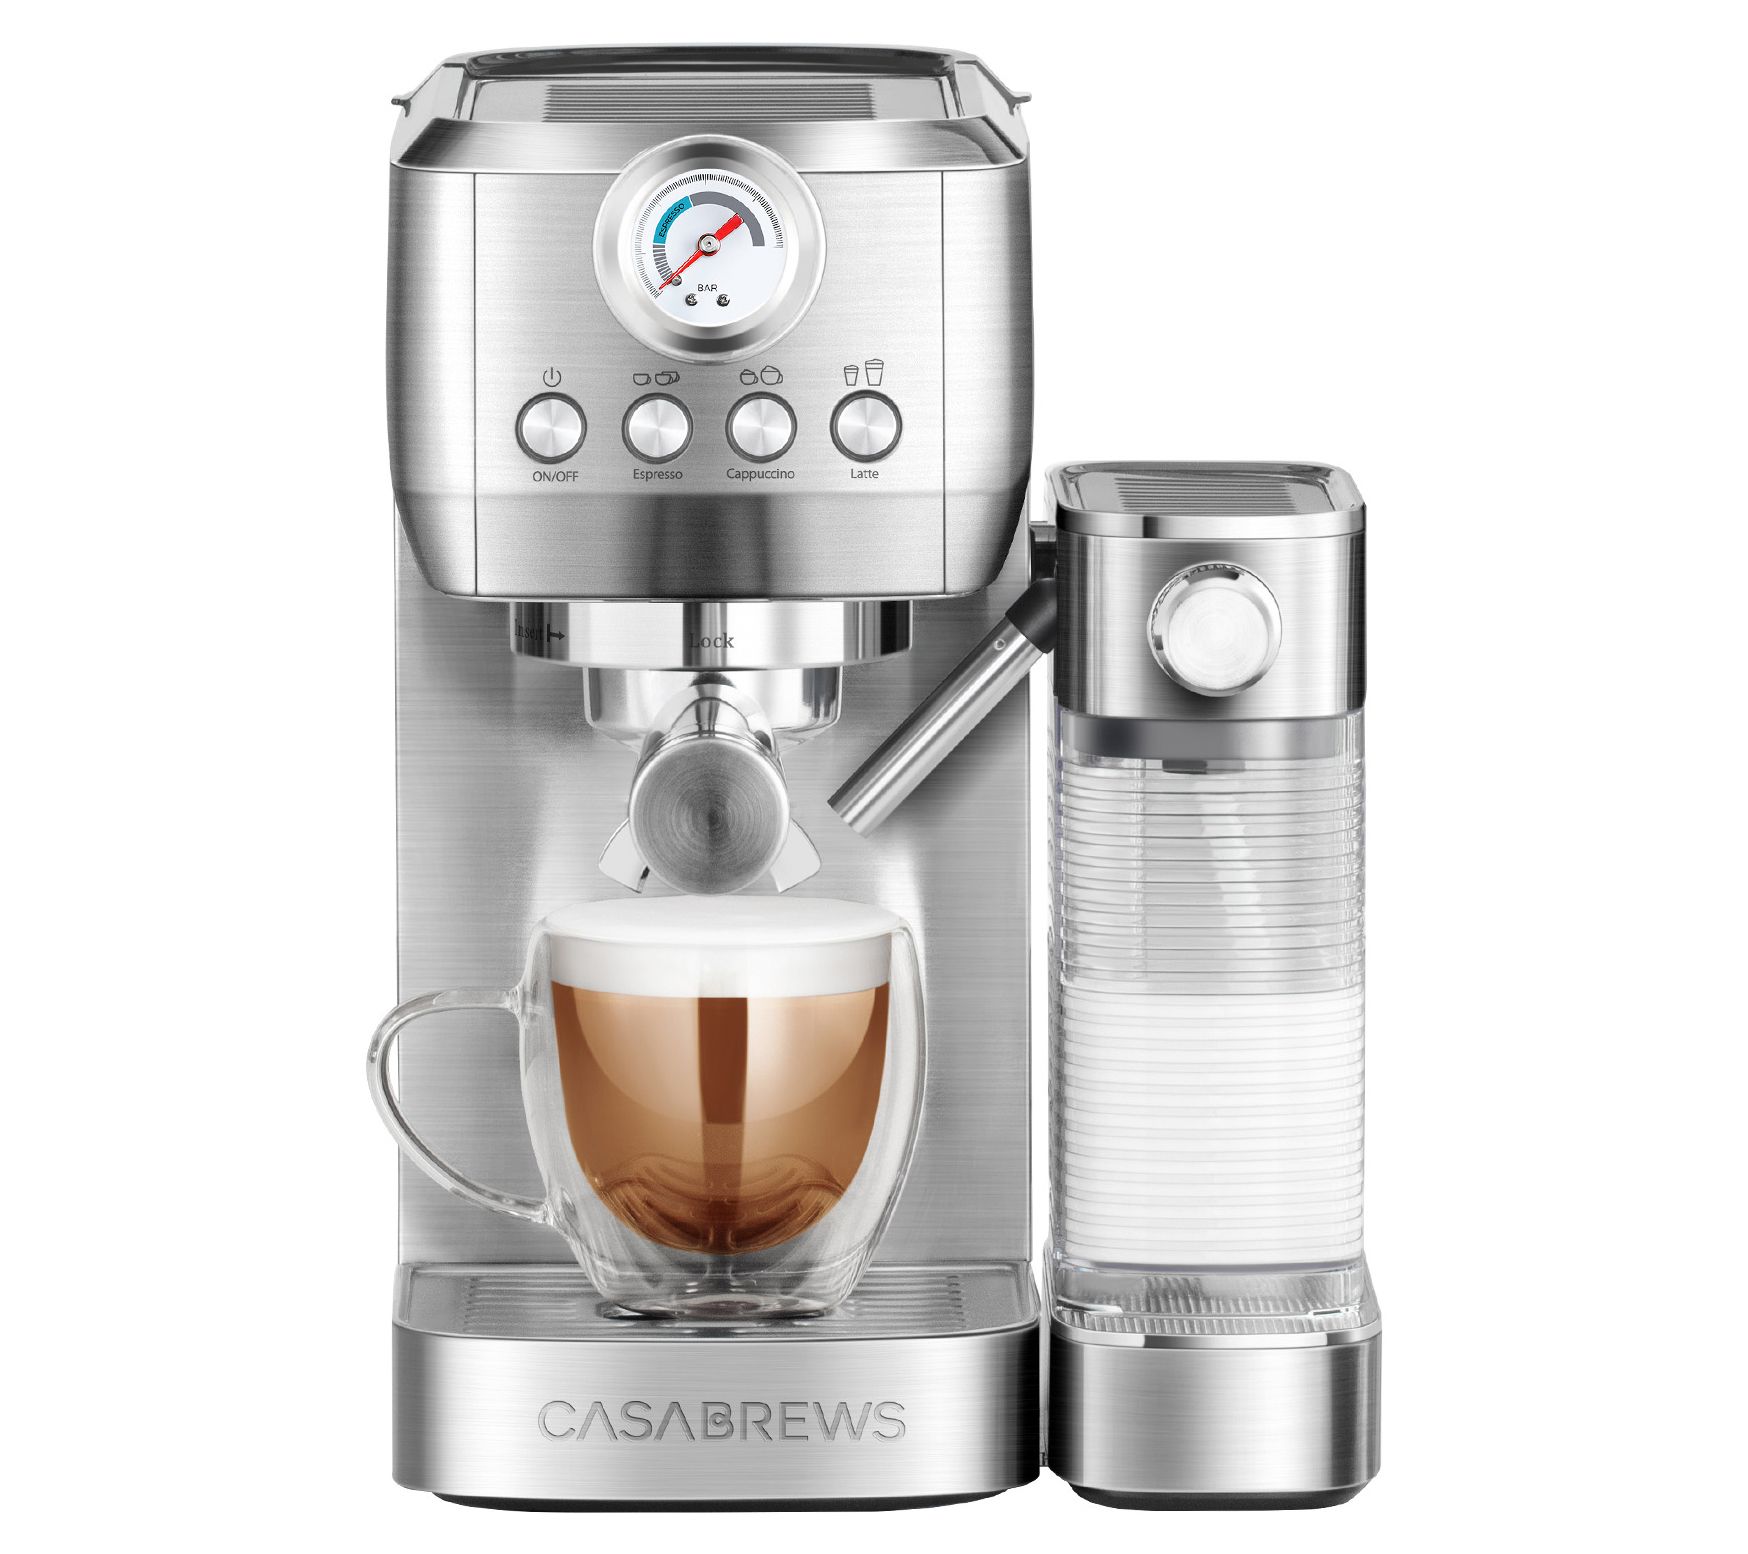  CASABREWS Espresso Machine 20 Bar with Milk Frother Steam Wand  & 51mm Stainless Steel Portafilter Set: Home & Kitchen